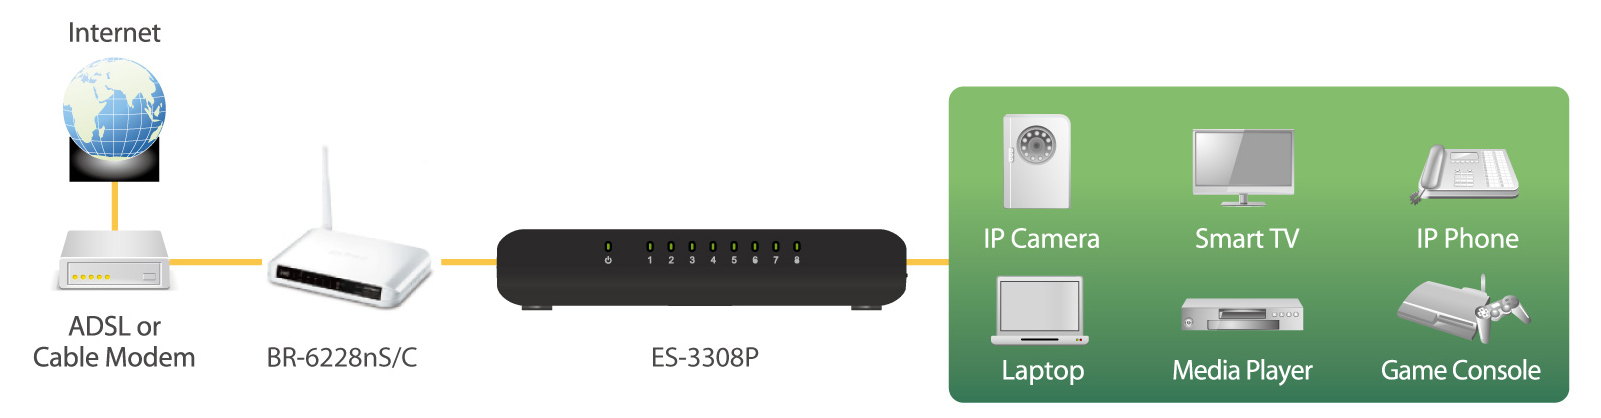 Edimax 8-Port Fast Ethernet Desktop Switch ES-3308P_V2 application diagram